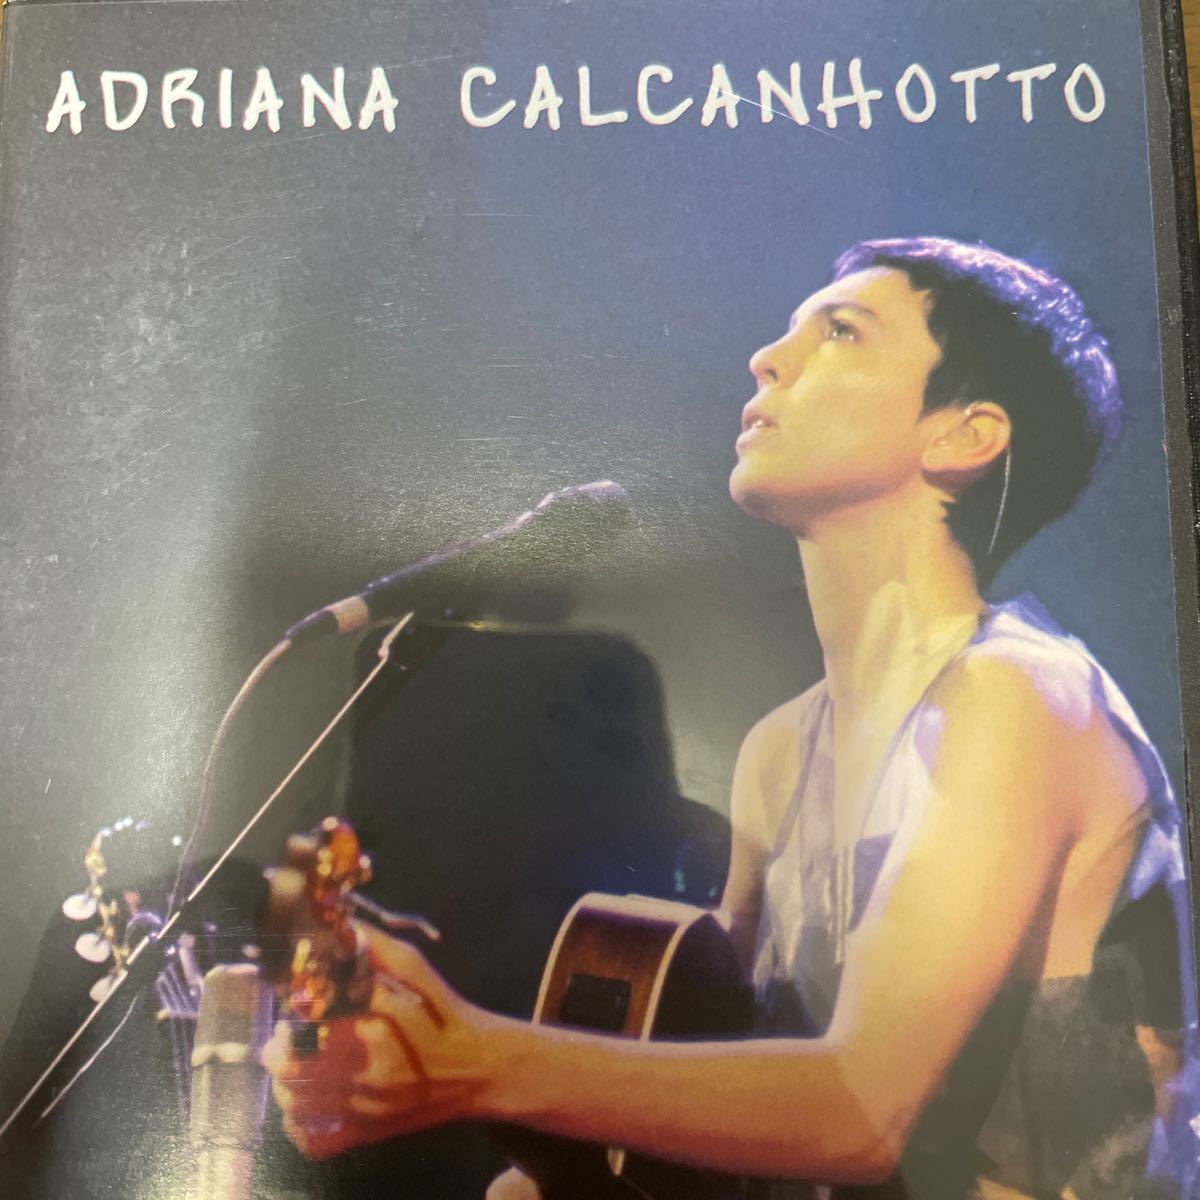 アドリアーナカルカニョート ADRIANA CALCANHOTTO - PUBLICO ブラジル盤DVD